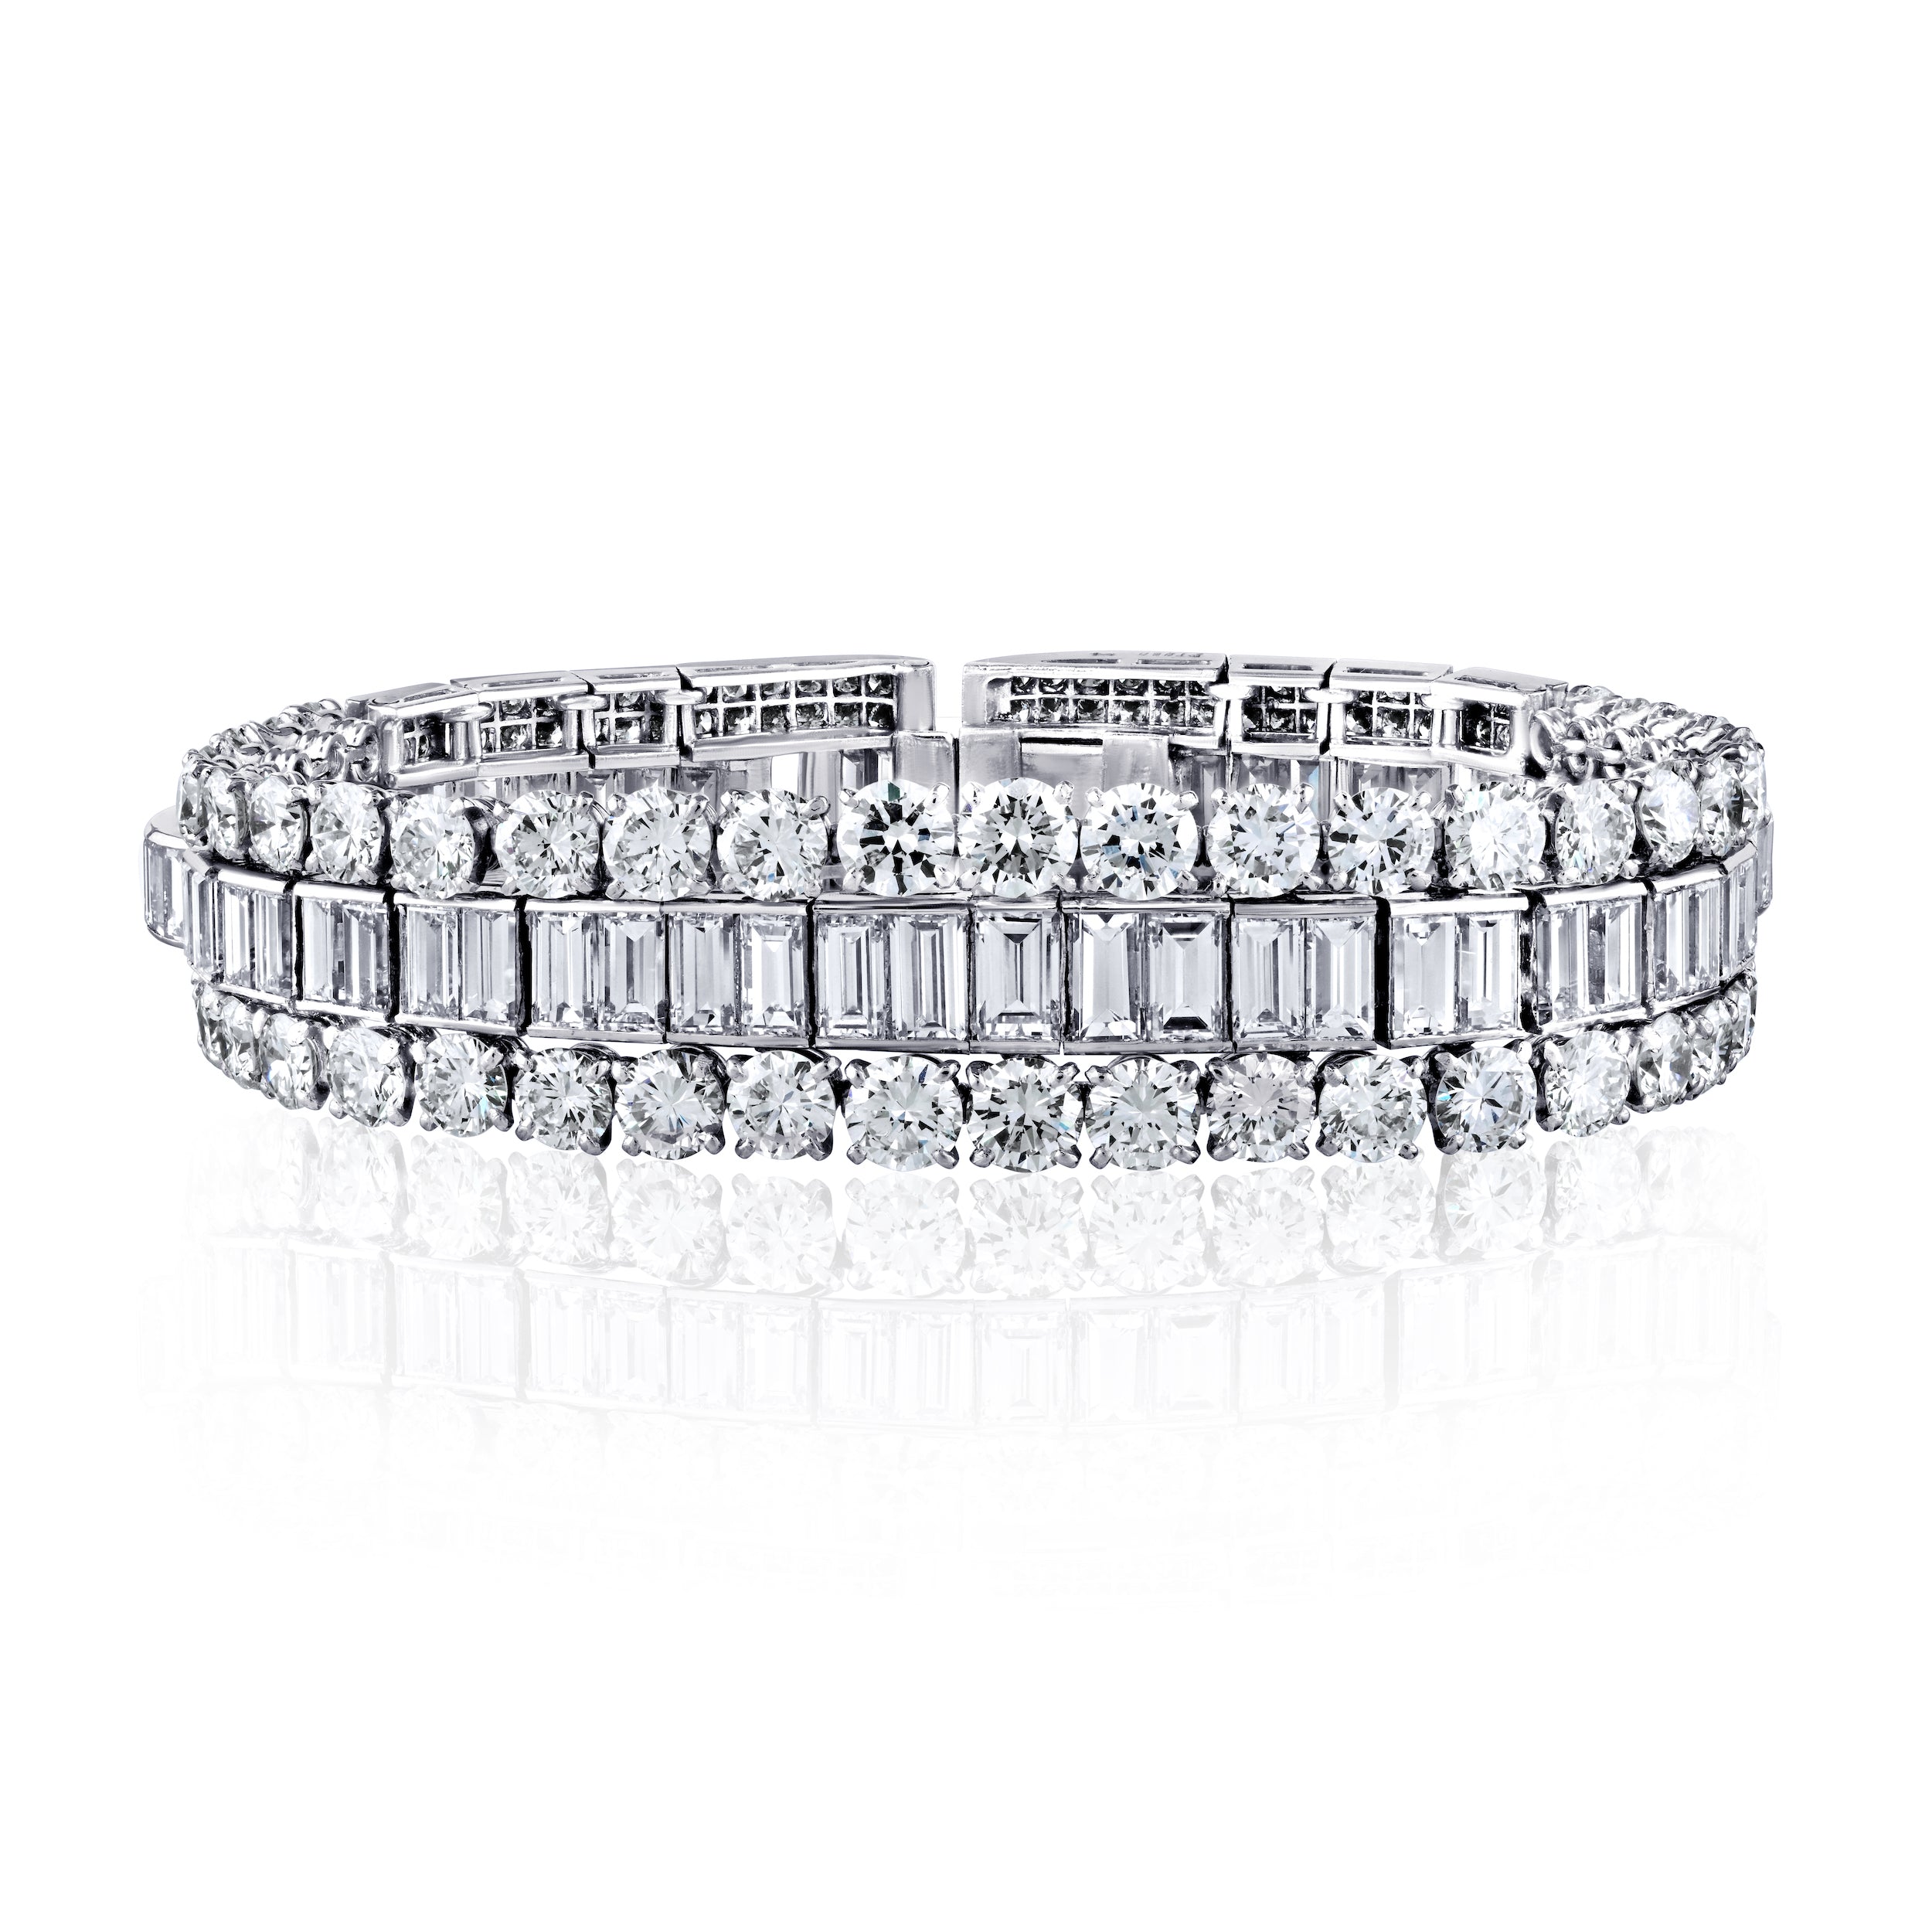 45-Carat-TW-Baguette-and-Round-Cut-Natural-D-E-F-color-Diamond-Bracelet-in-Platinum-950-Bracelet-2.jpg